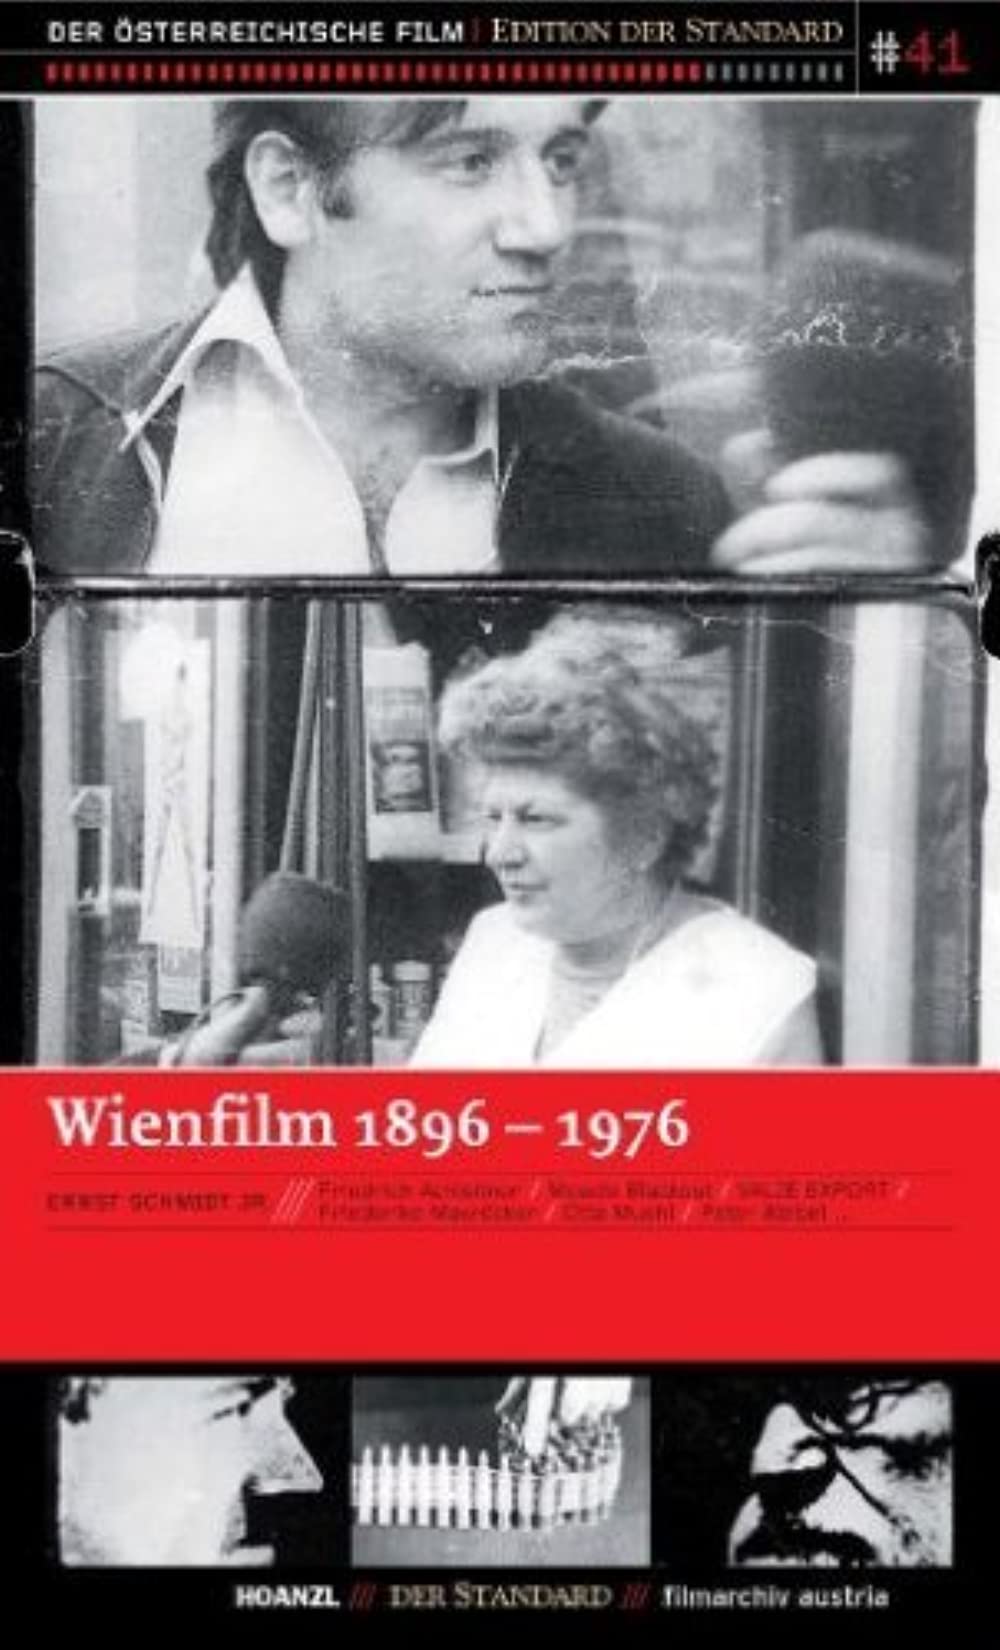 Filmbeschreibung zu Wienfilm 1896 - 1976